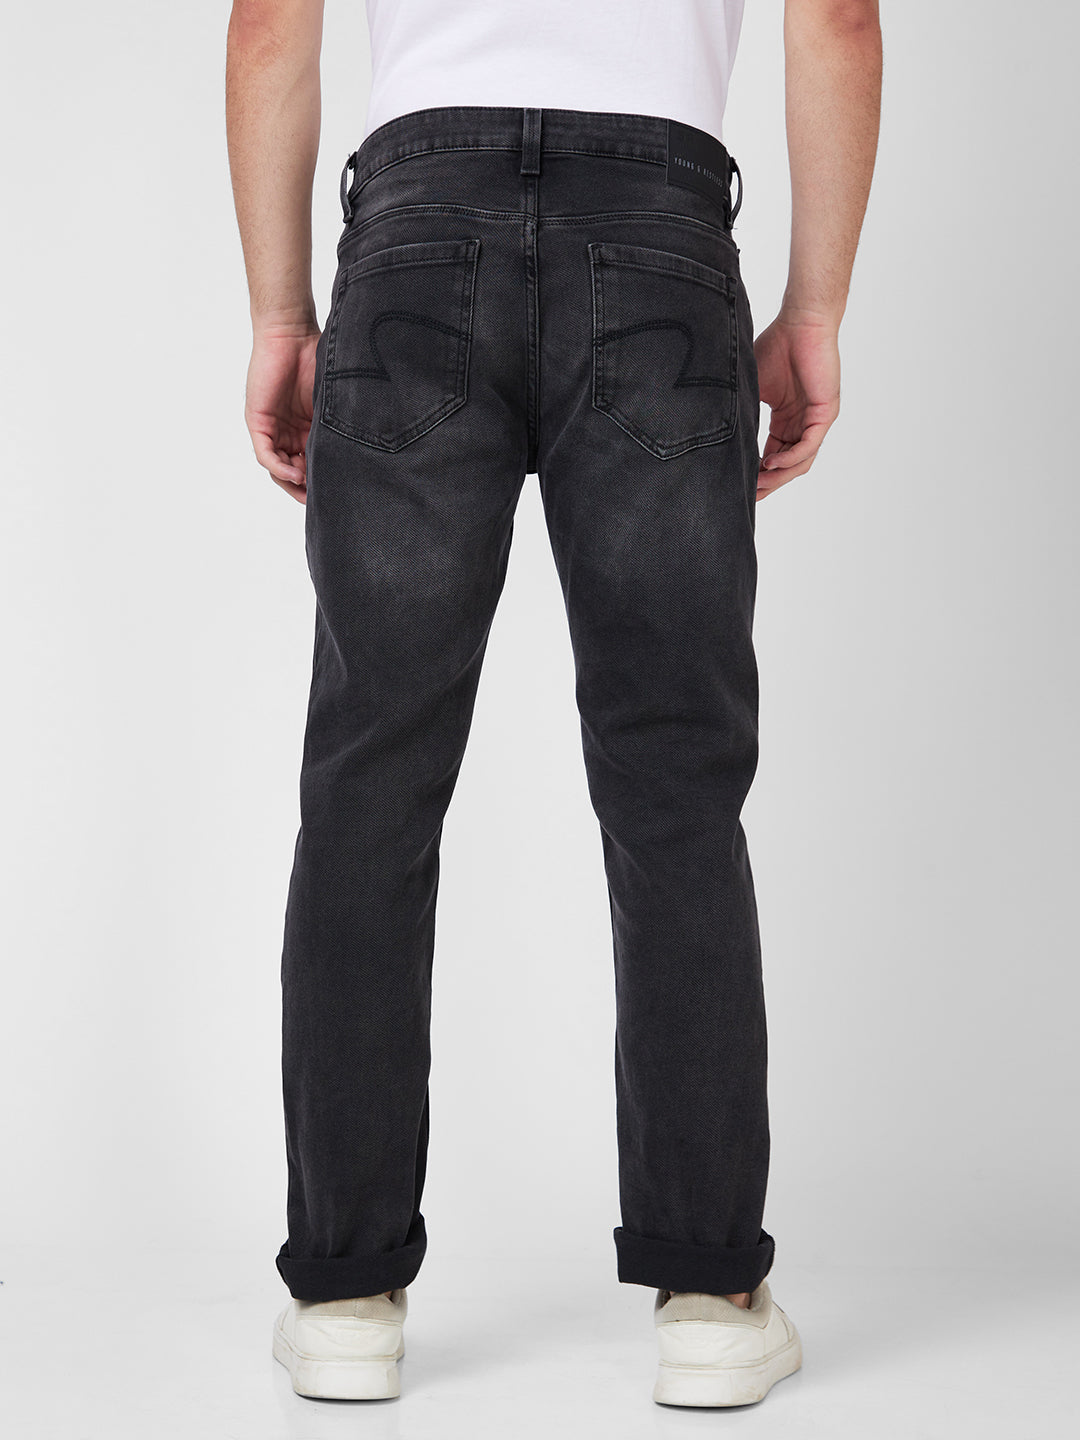 Spykar Mid Rise Regular Fit Narrow Length Black Jeans For Men